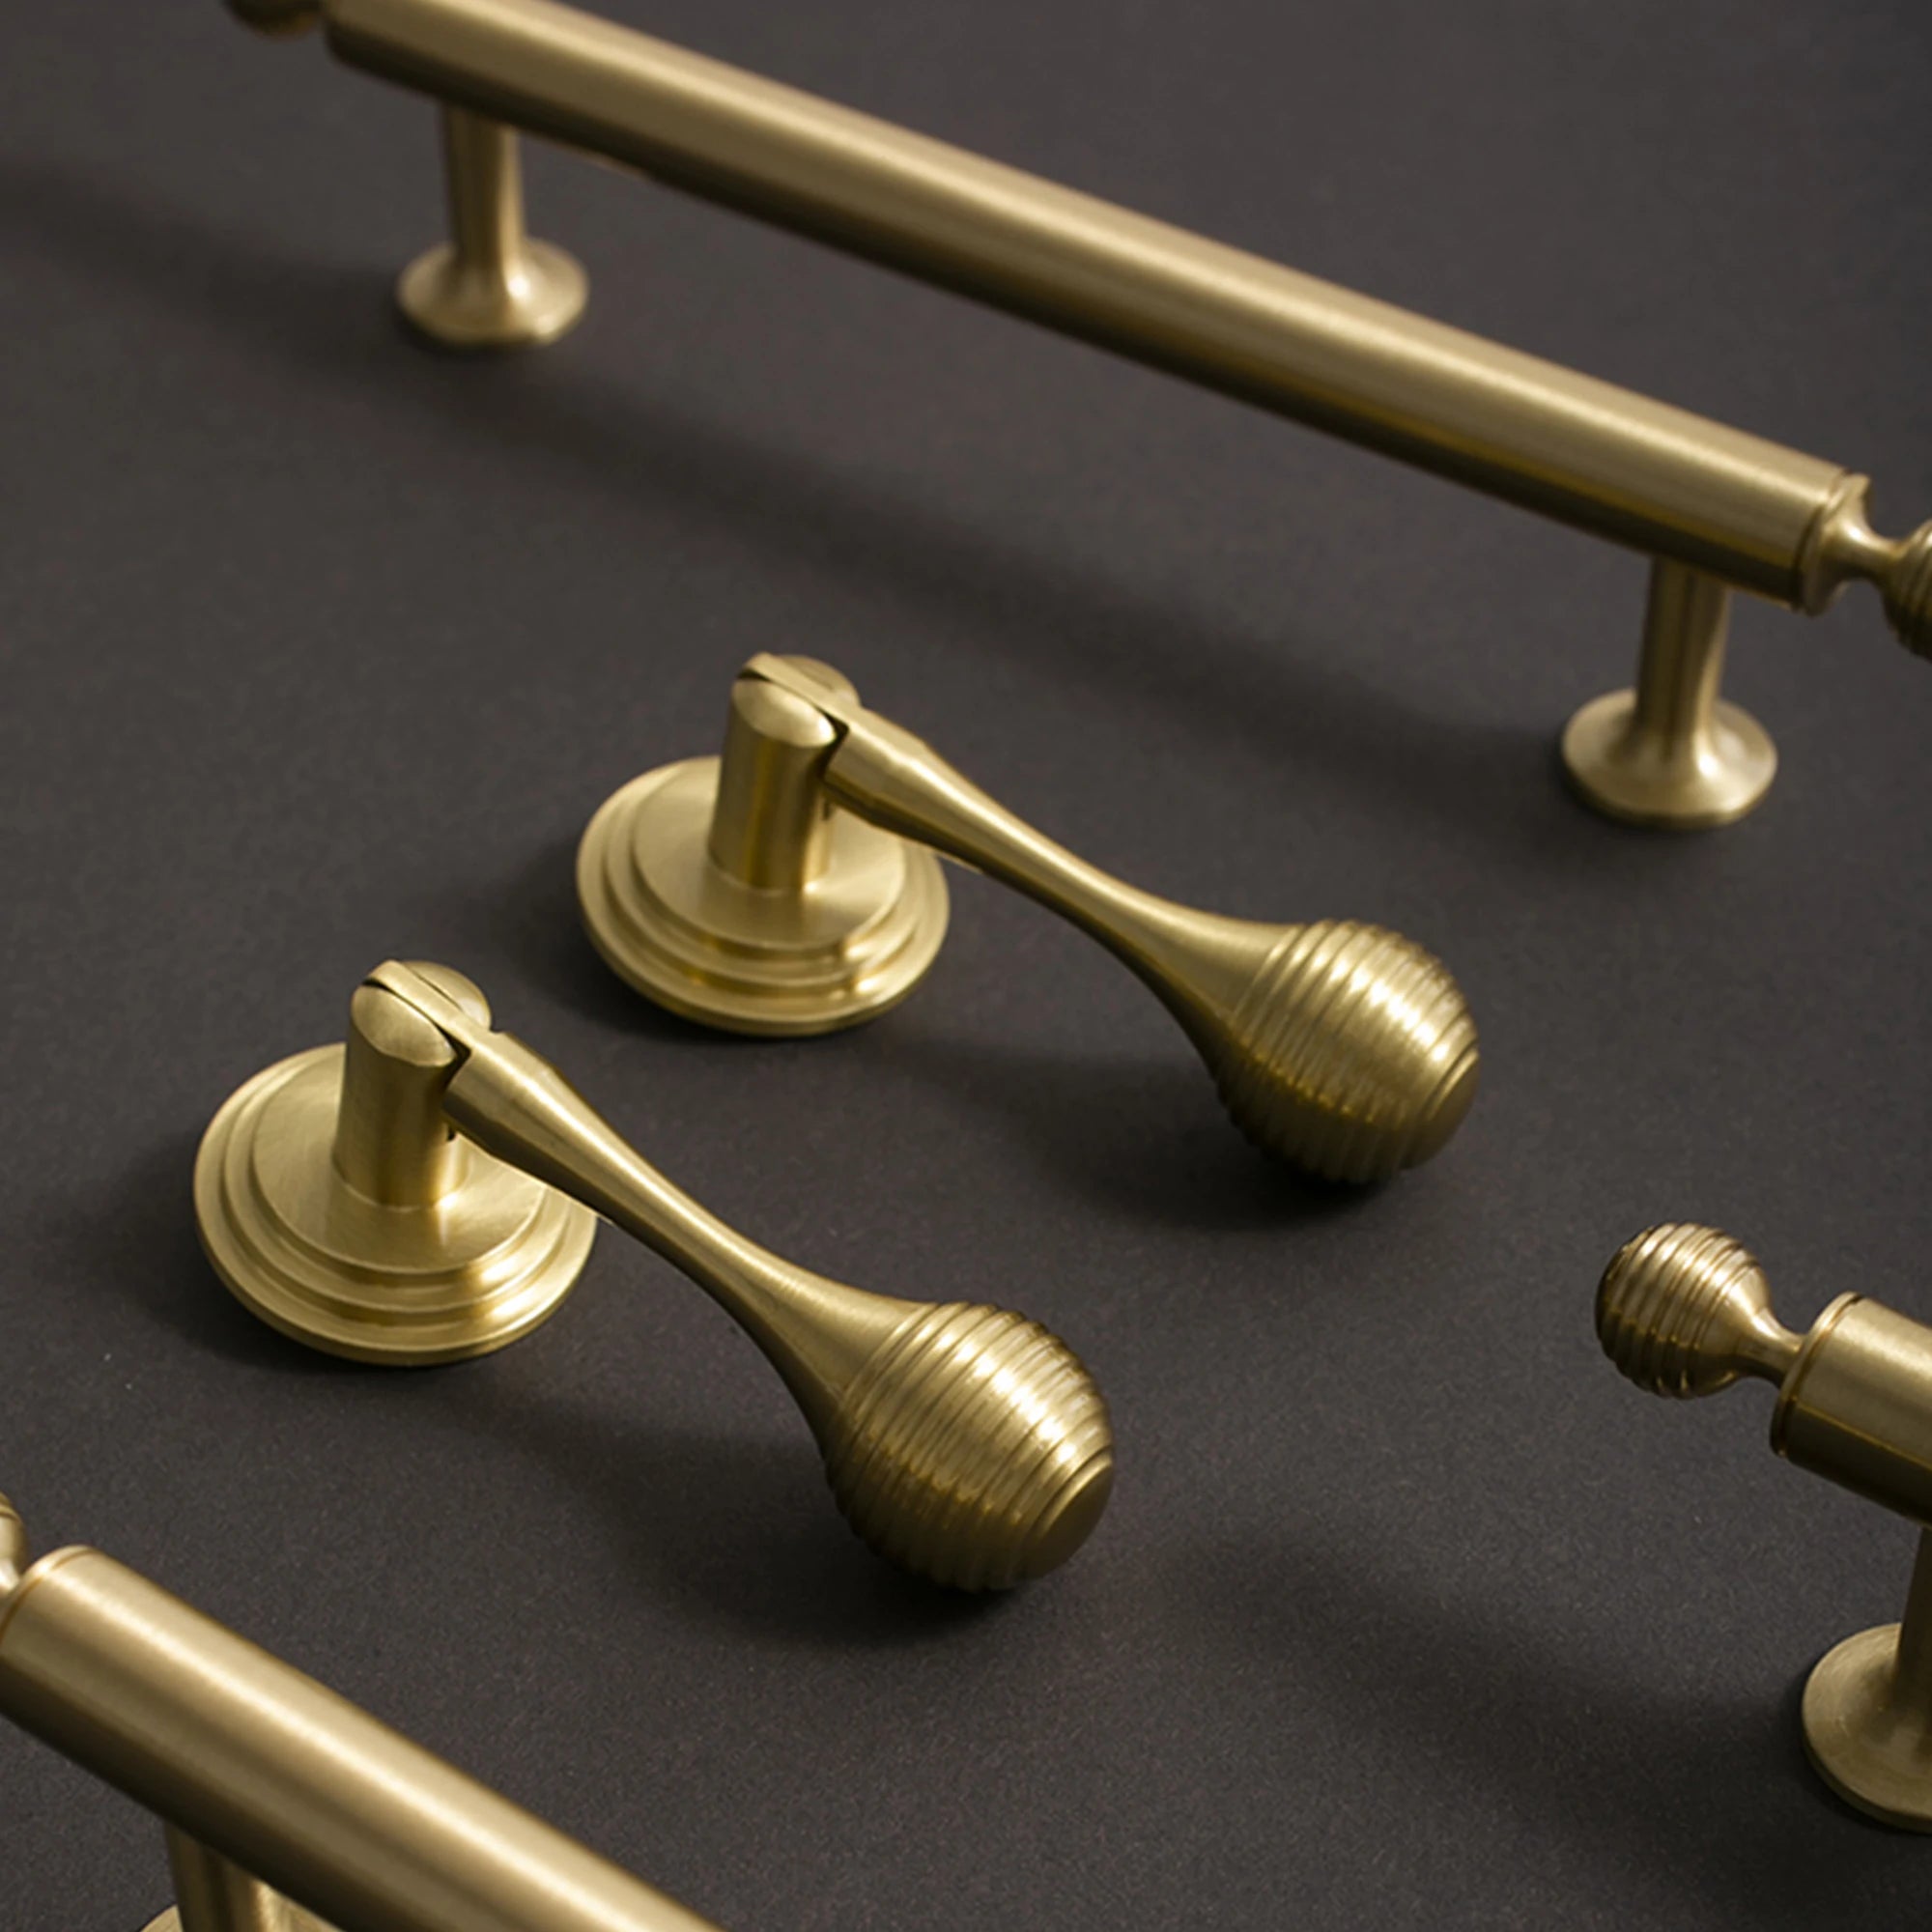 Solid Brass Wardrobe Drop Pulls Round Door Knobs Light Luxury Furniture Handles Cabinet Handle Hardware Kitchen Accessories